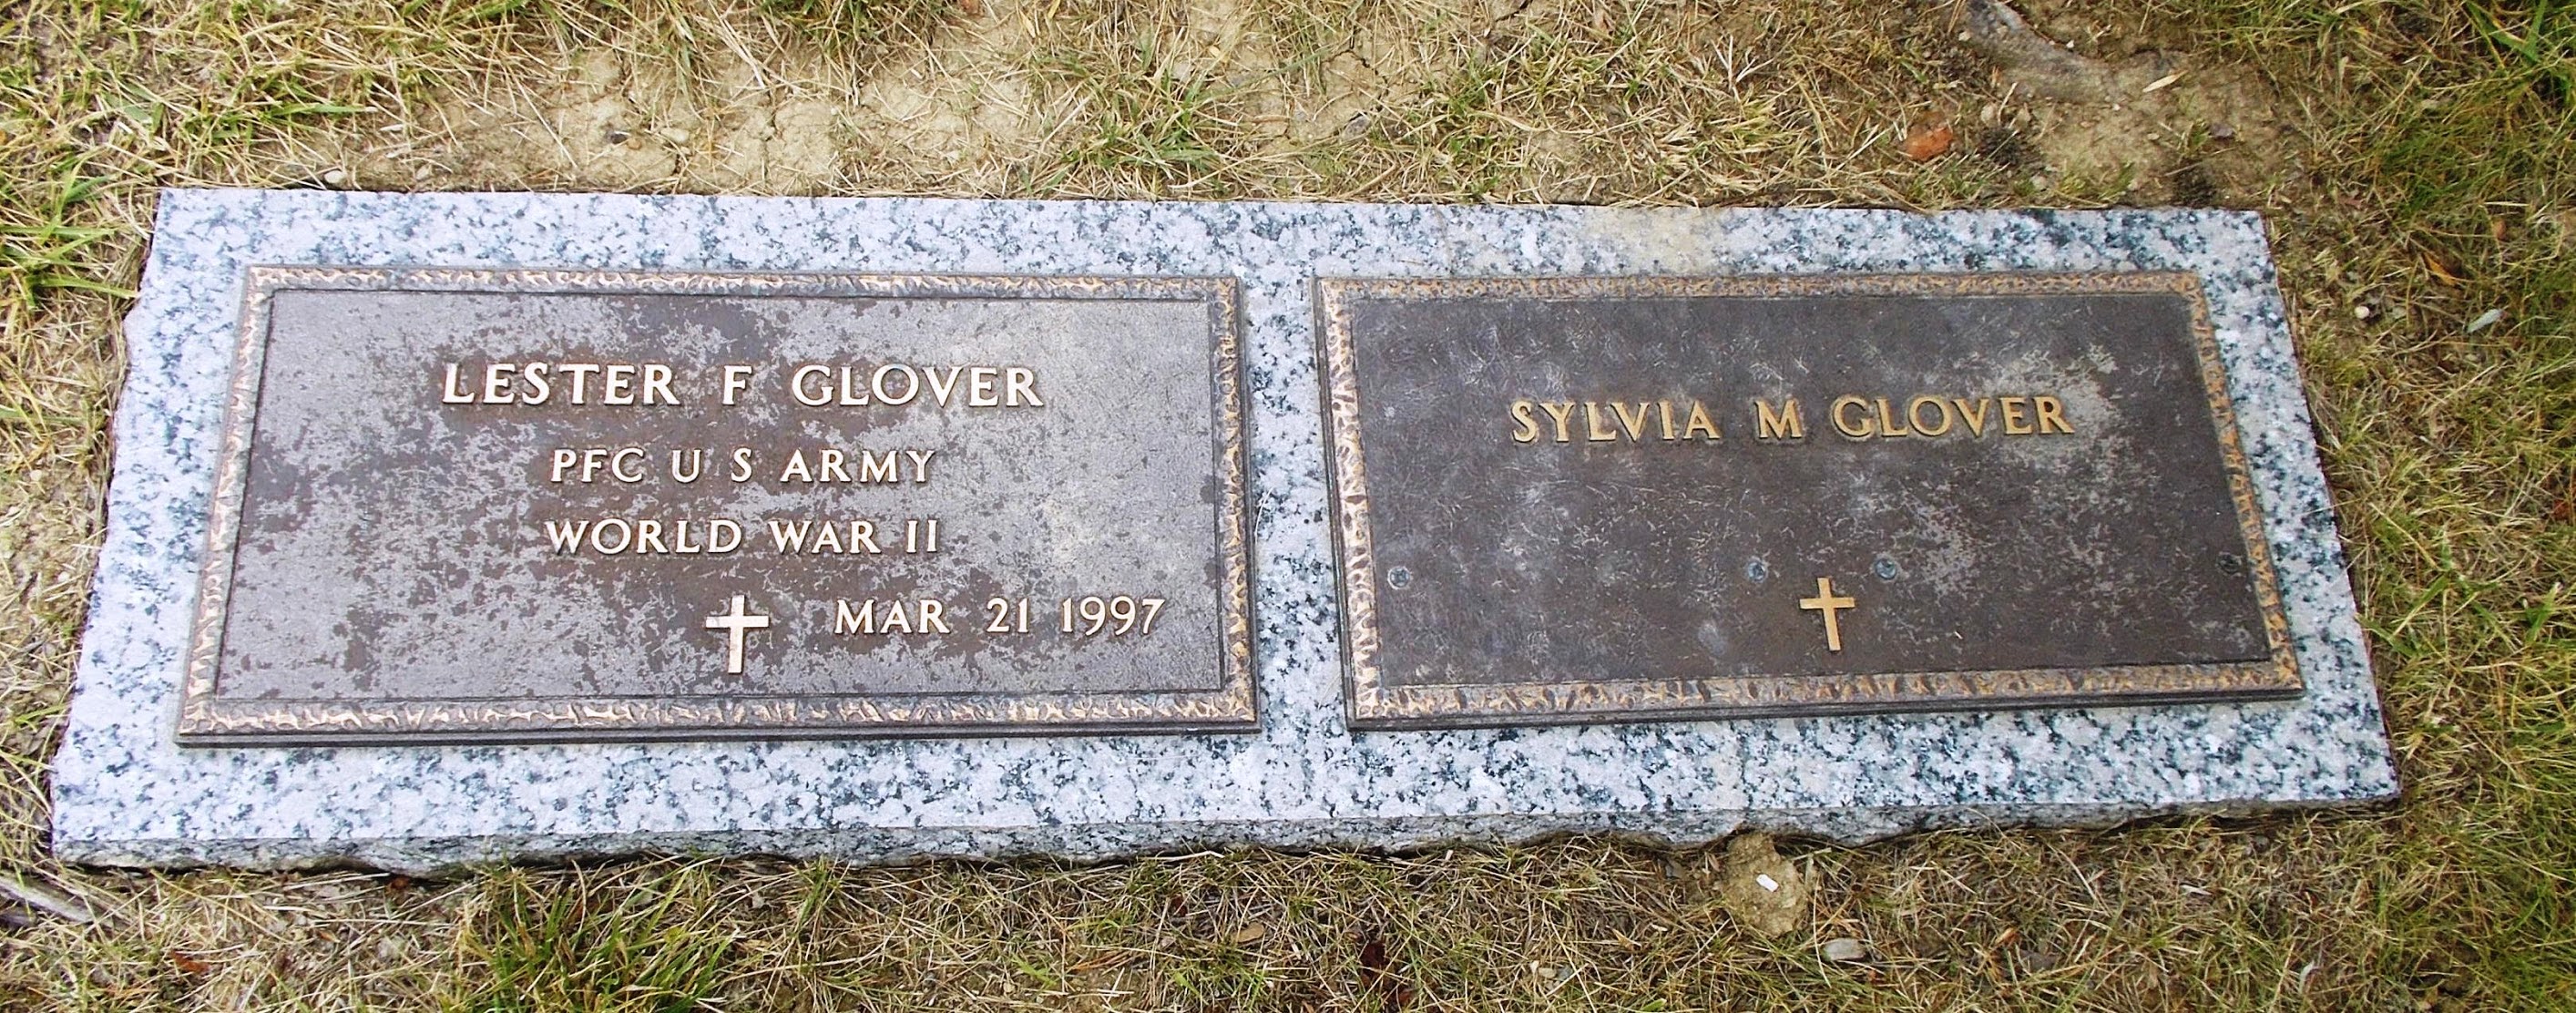 Sylvia M Glover